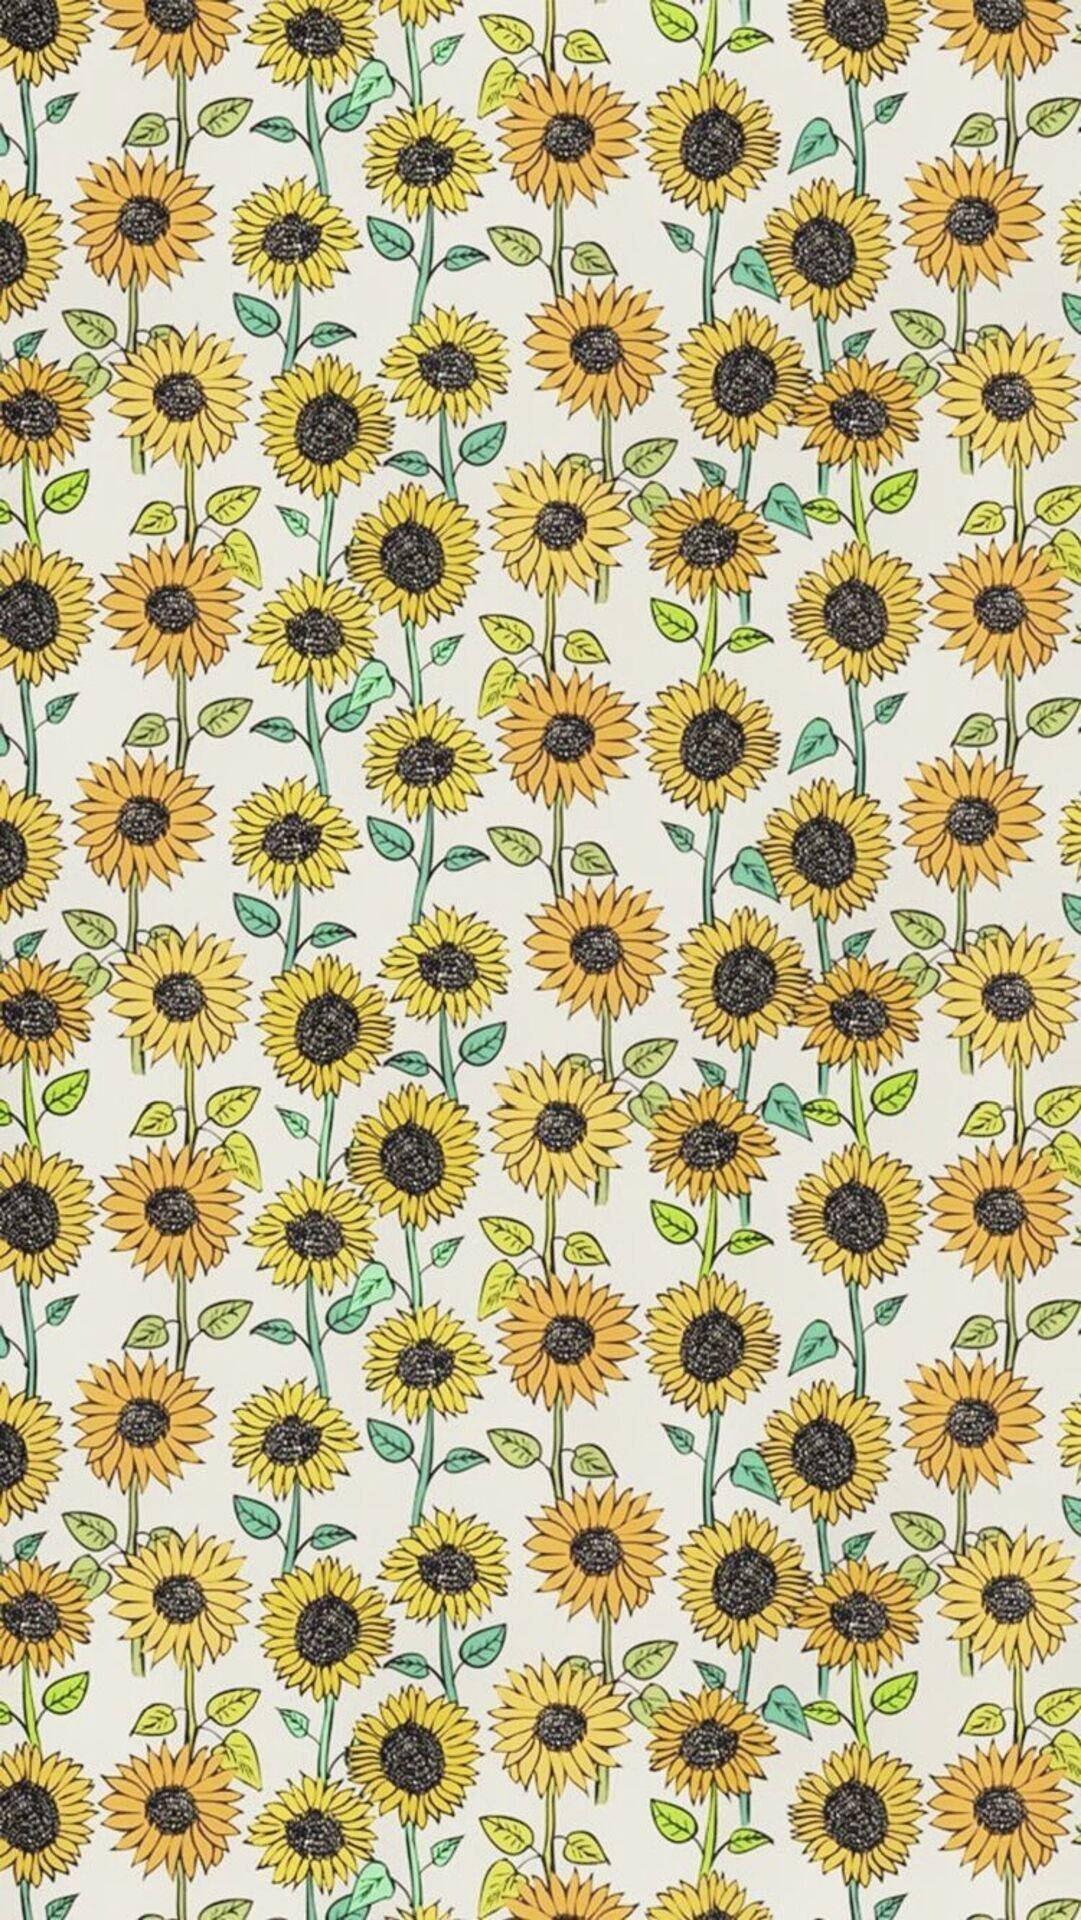 Sunflower Doodle Art Iphone Wallpaper